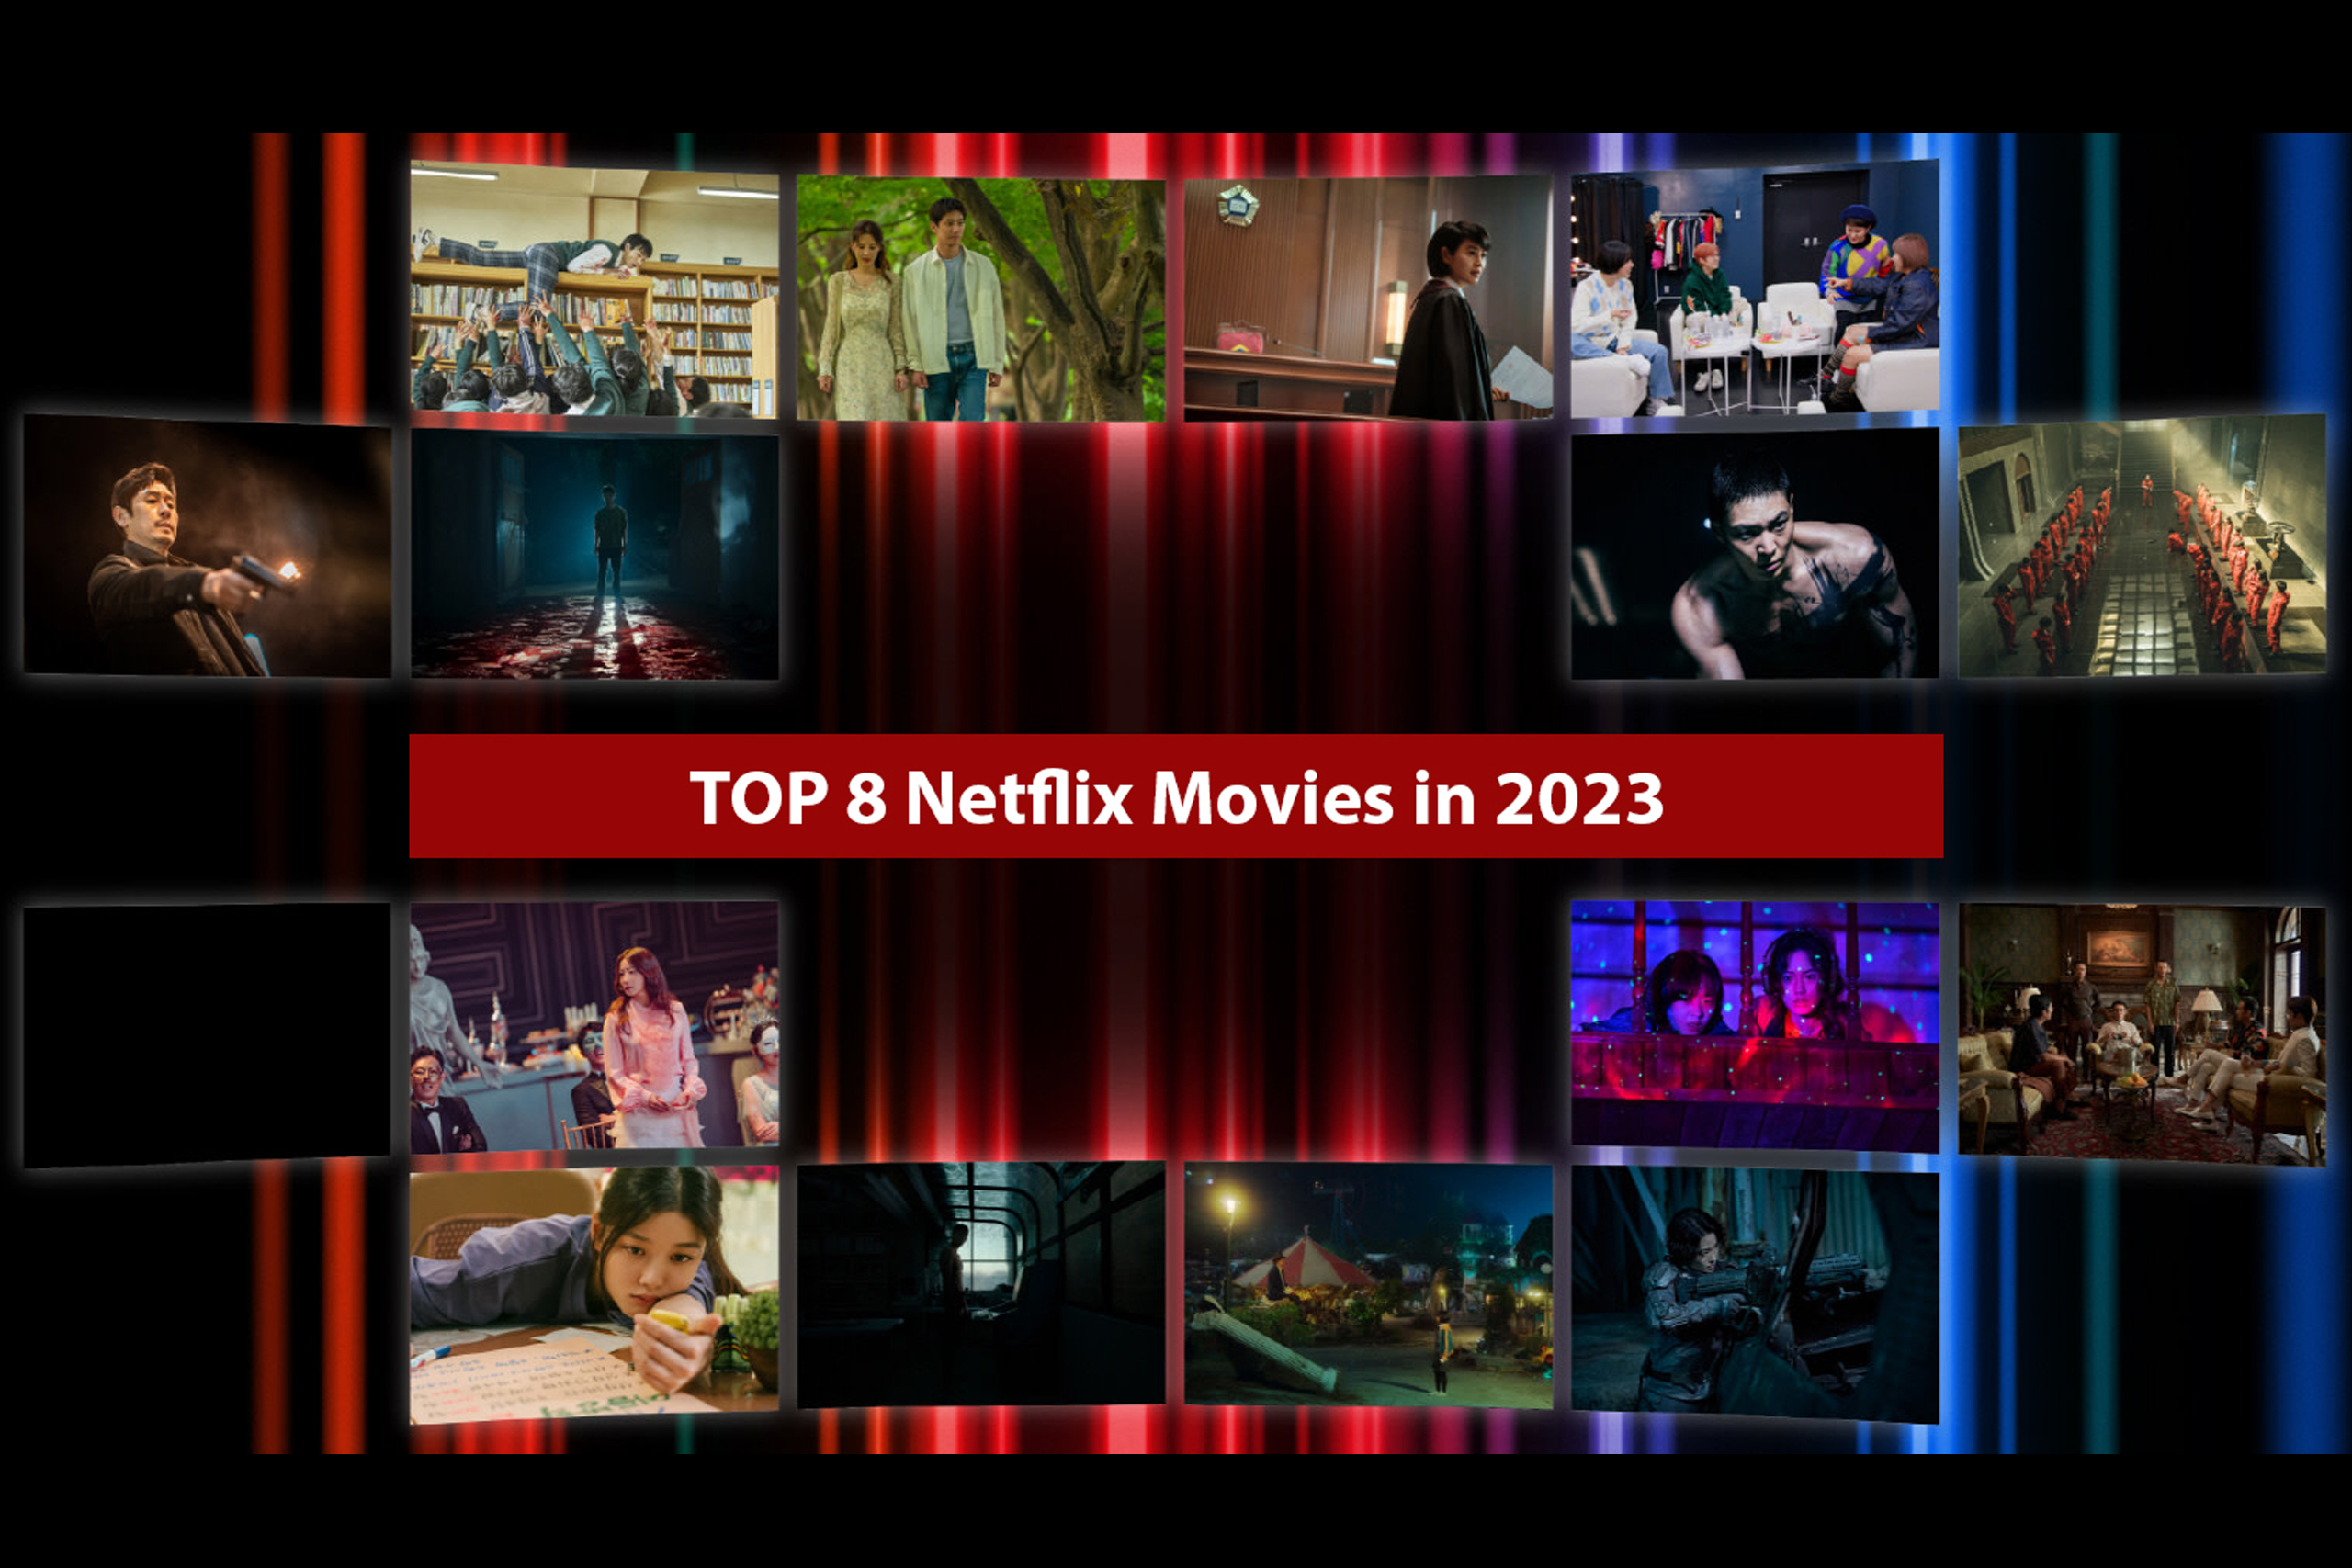 Top 8 Netflix Movies in 2023